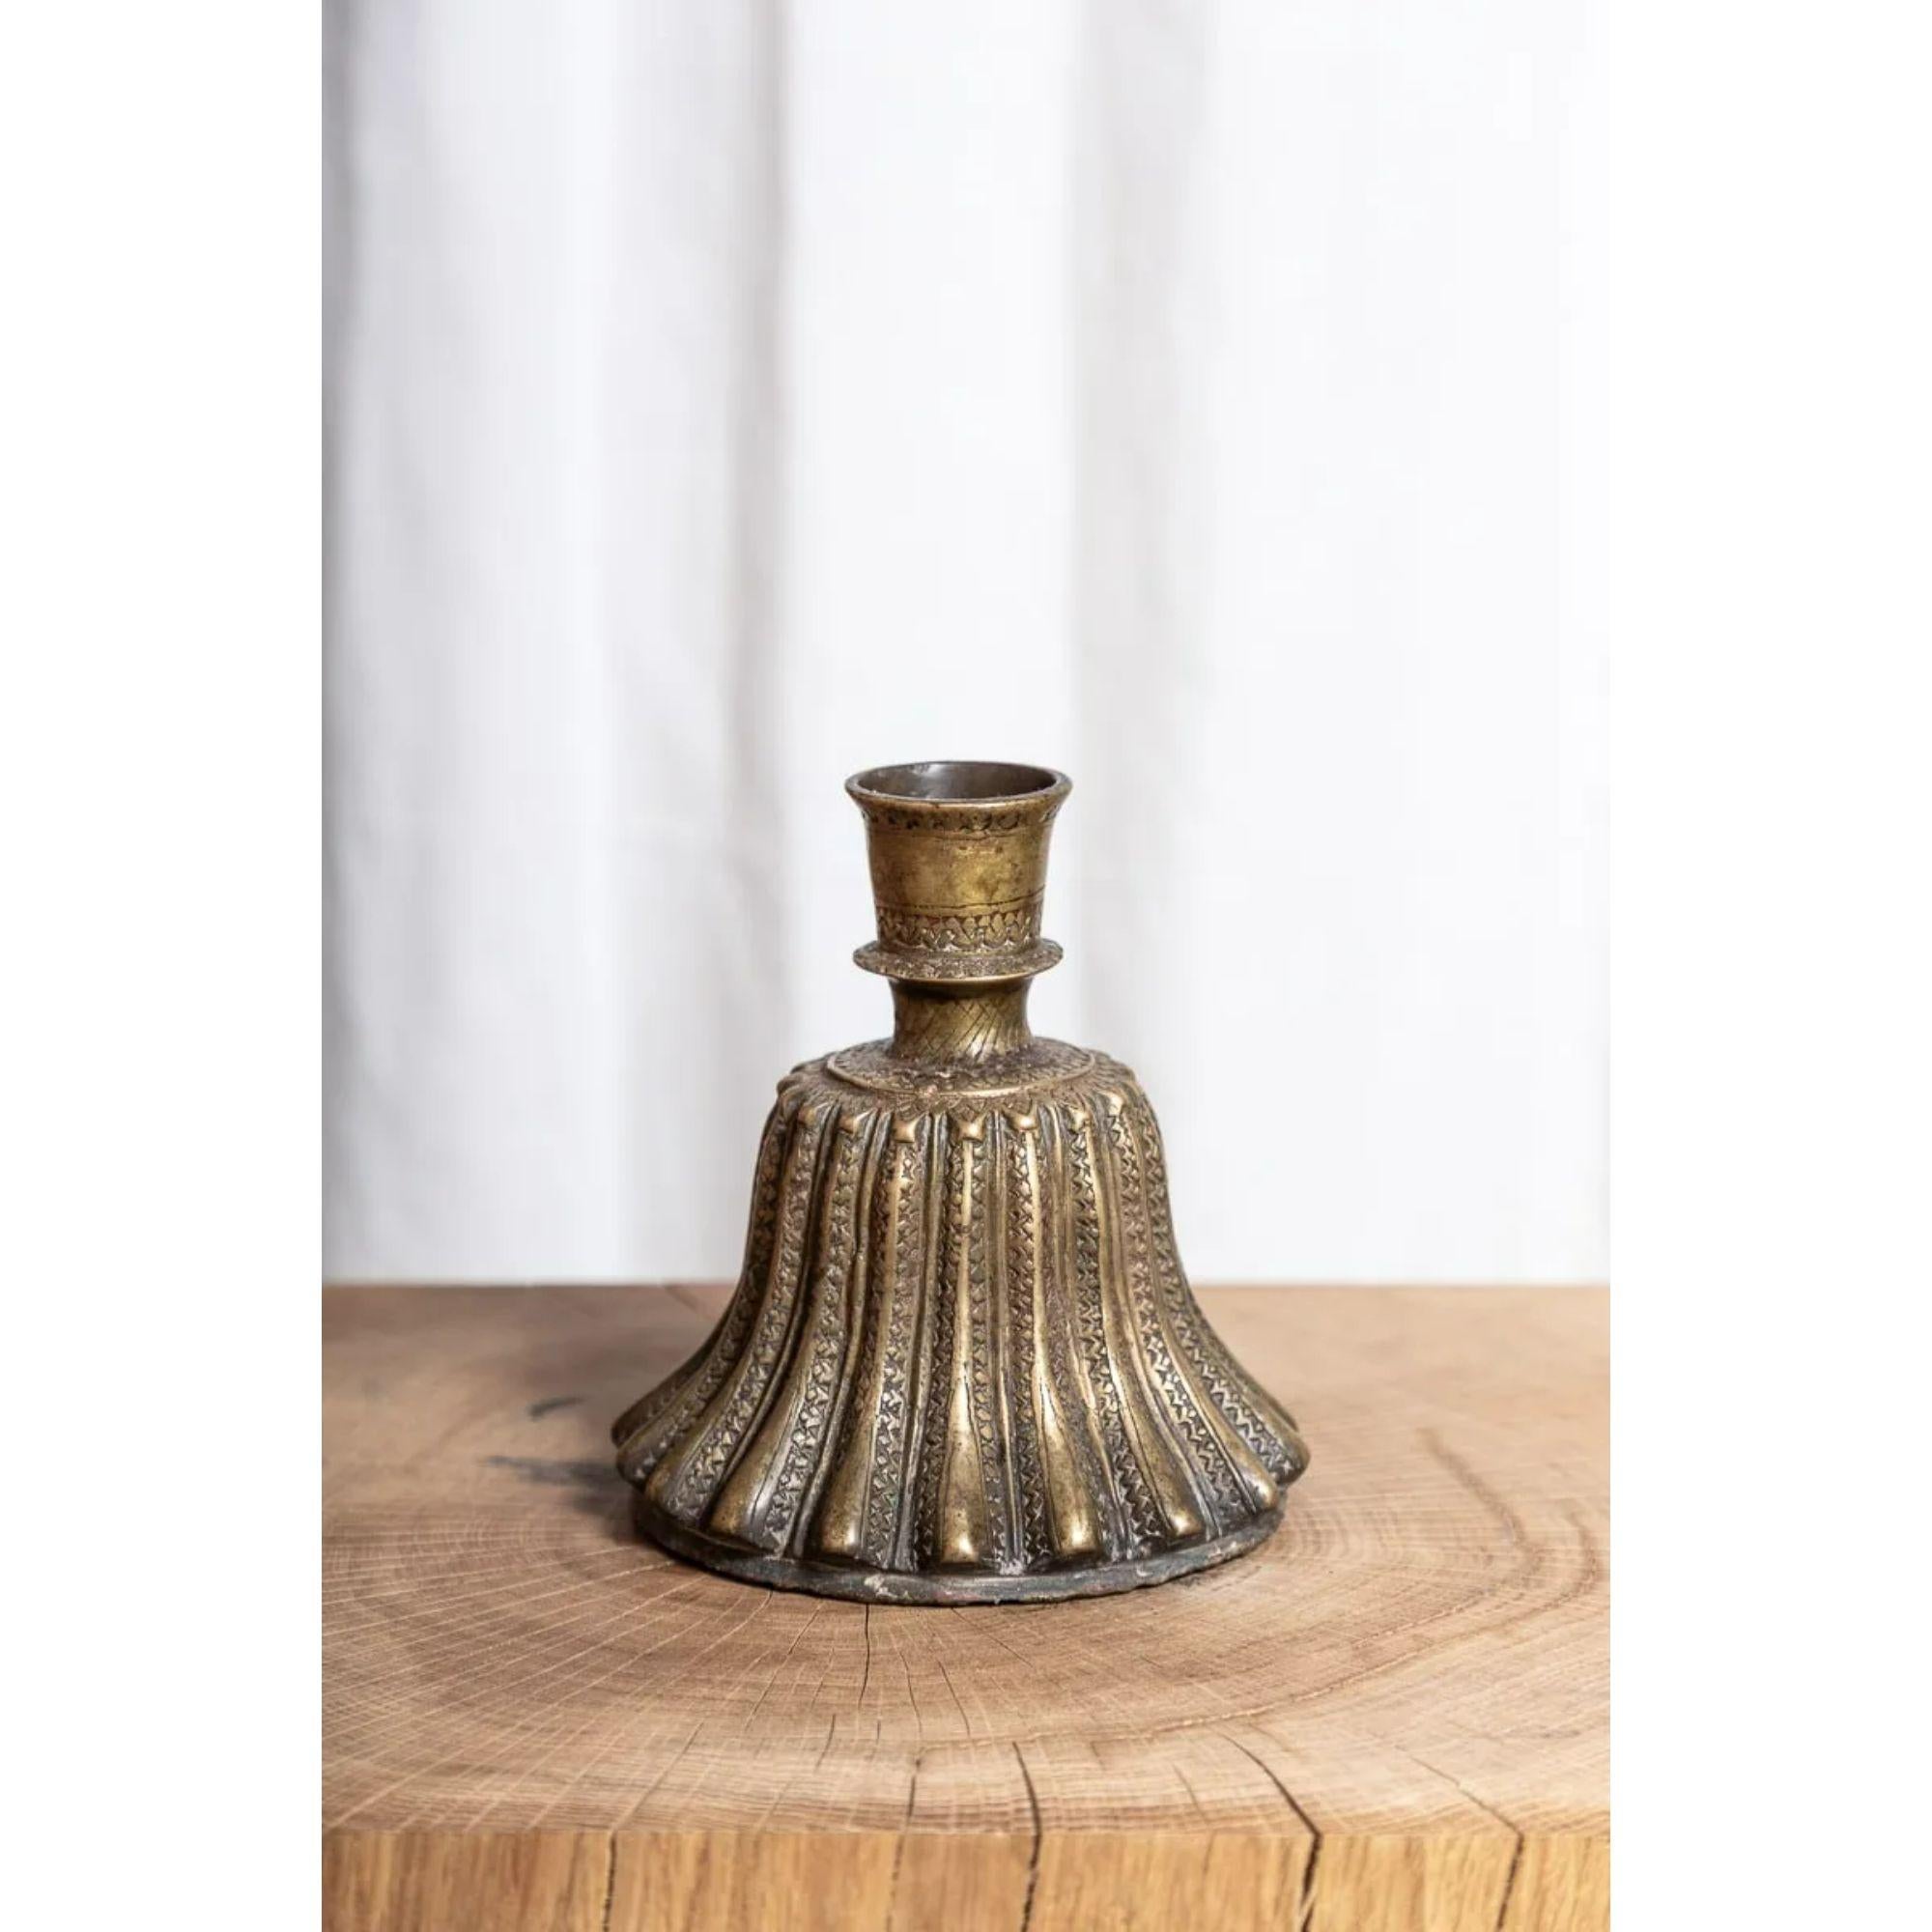 Base de narguilé en bronze indien.

Base de pipe à narguilé en laiton cannelé en forme de cloche.

Dimensions : H 16,5cm